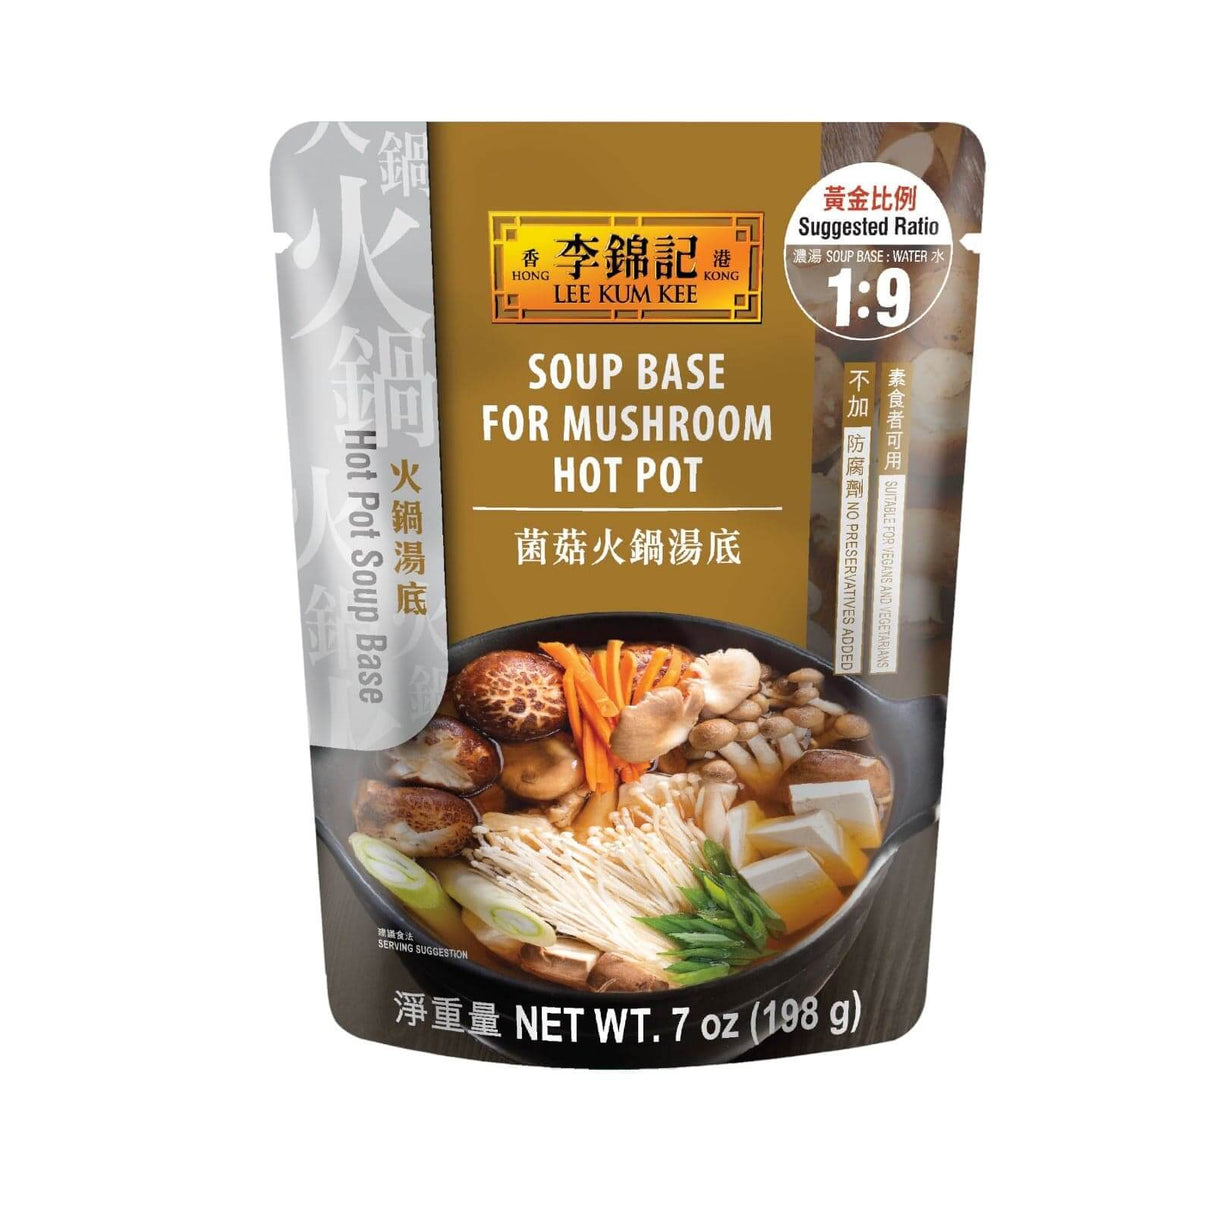 Lee Kum Kee Soup Base for Mushroom Hot Pot